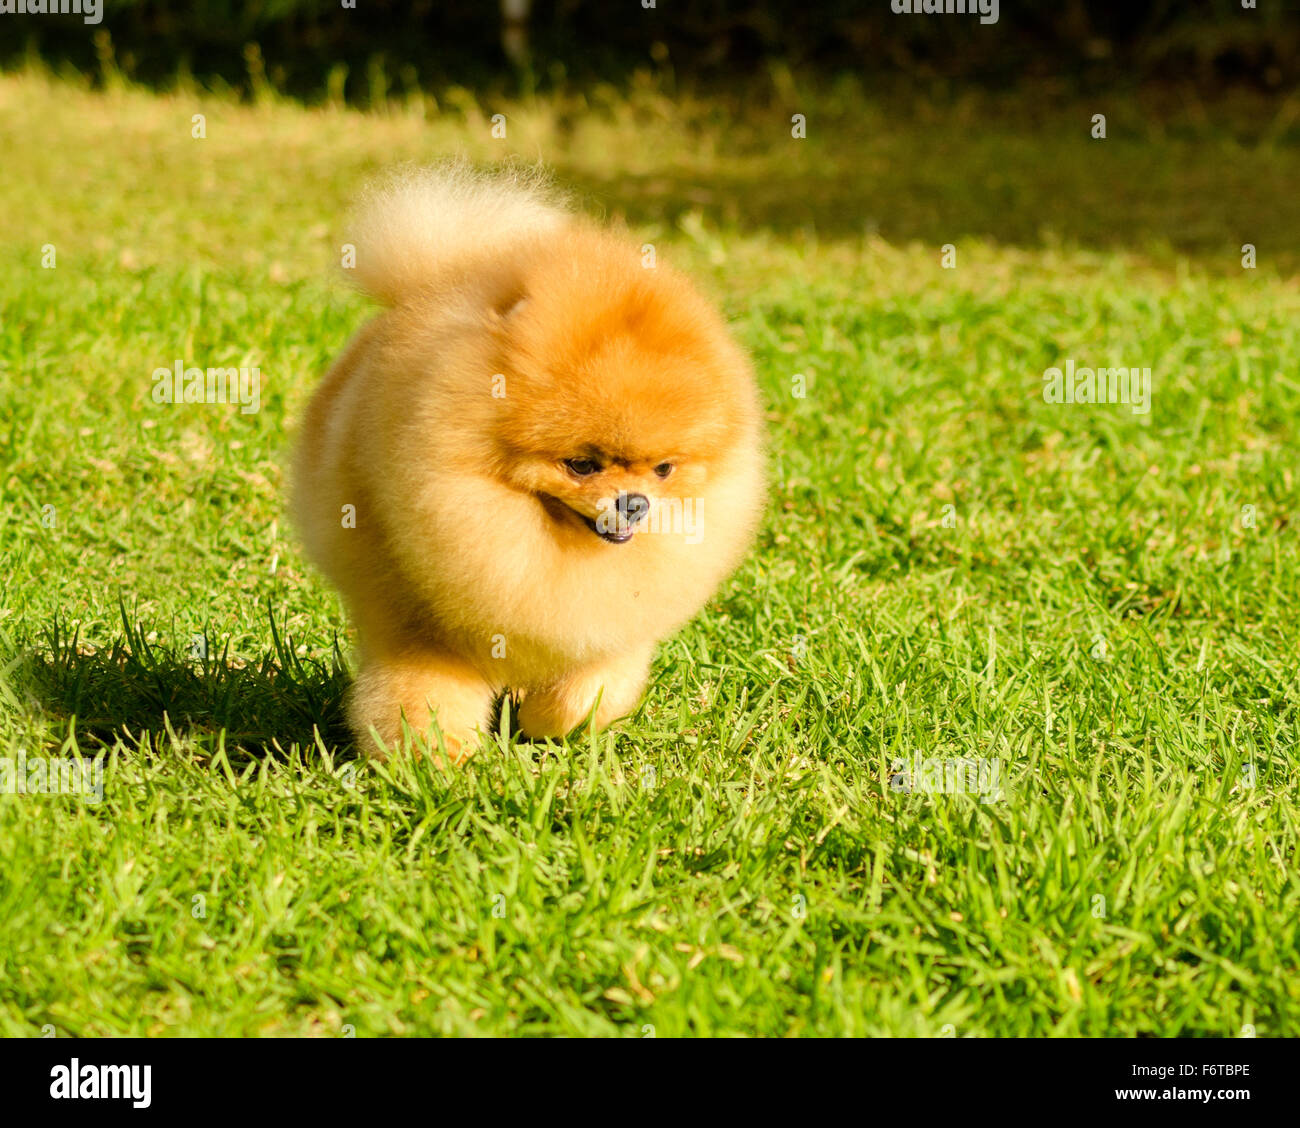 Ein kleiner Junge schöne flauschige orange Pommerschen Welpen Hund zu Fuß  auf dem Rasen. POM Hunde gelten in der Spielzeug-Kateg Stockfotografie -  Alamy